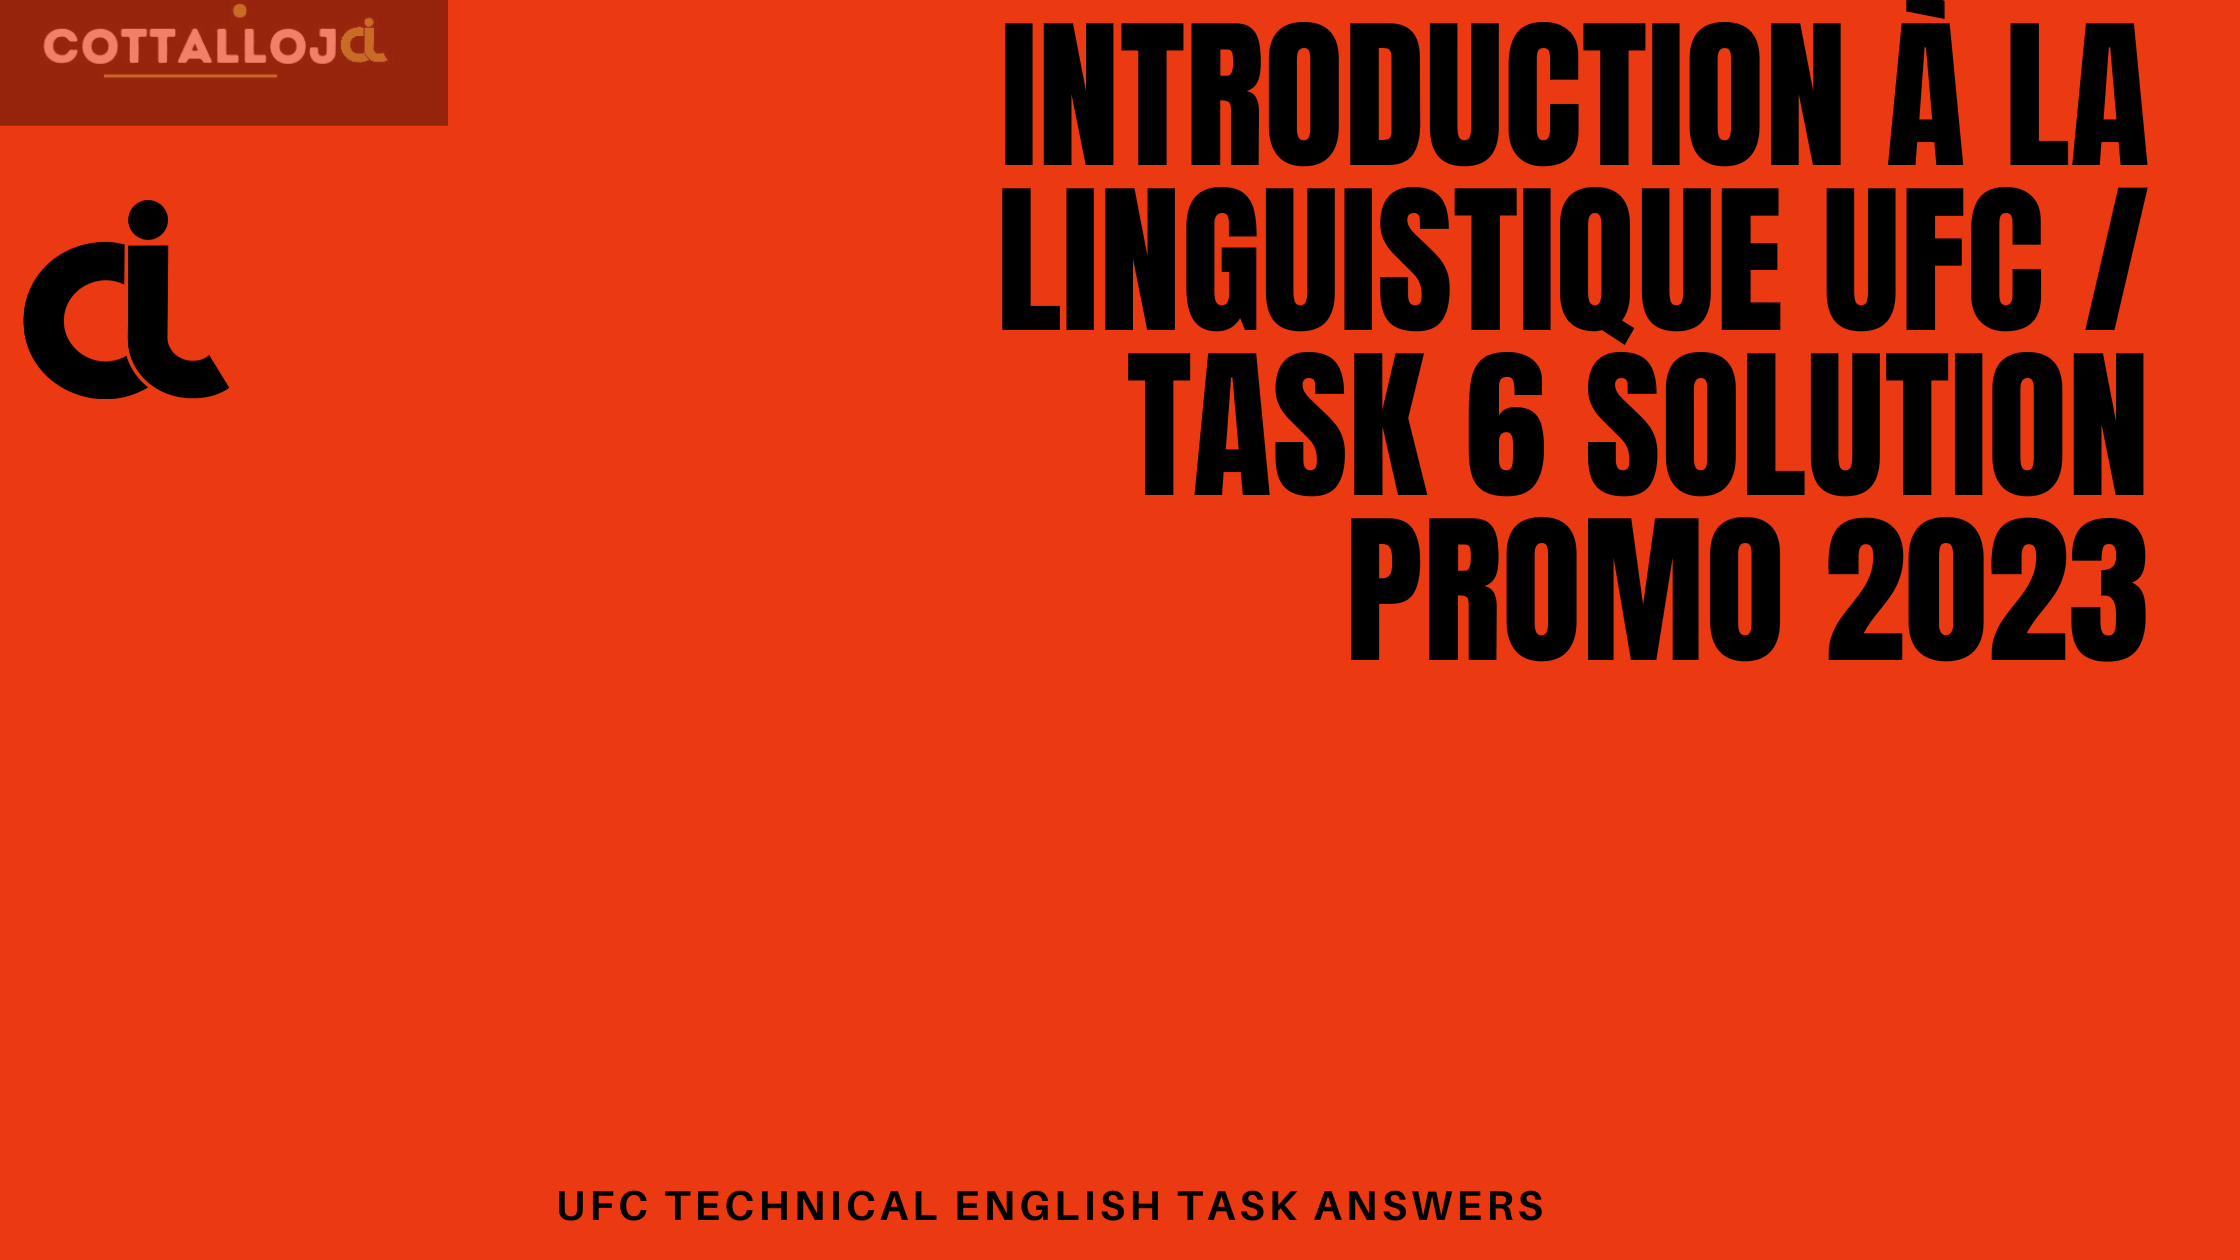 Introduction à la linguistique UFC / Task 6 solution promo 2023